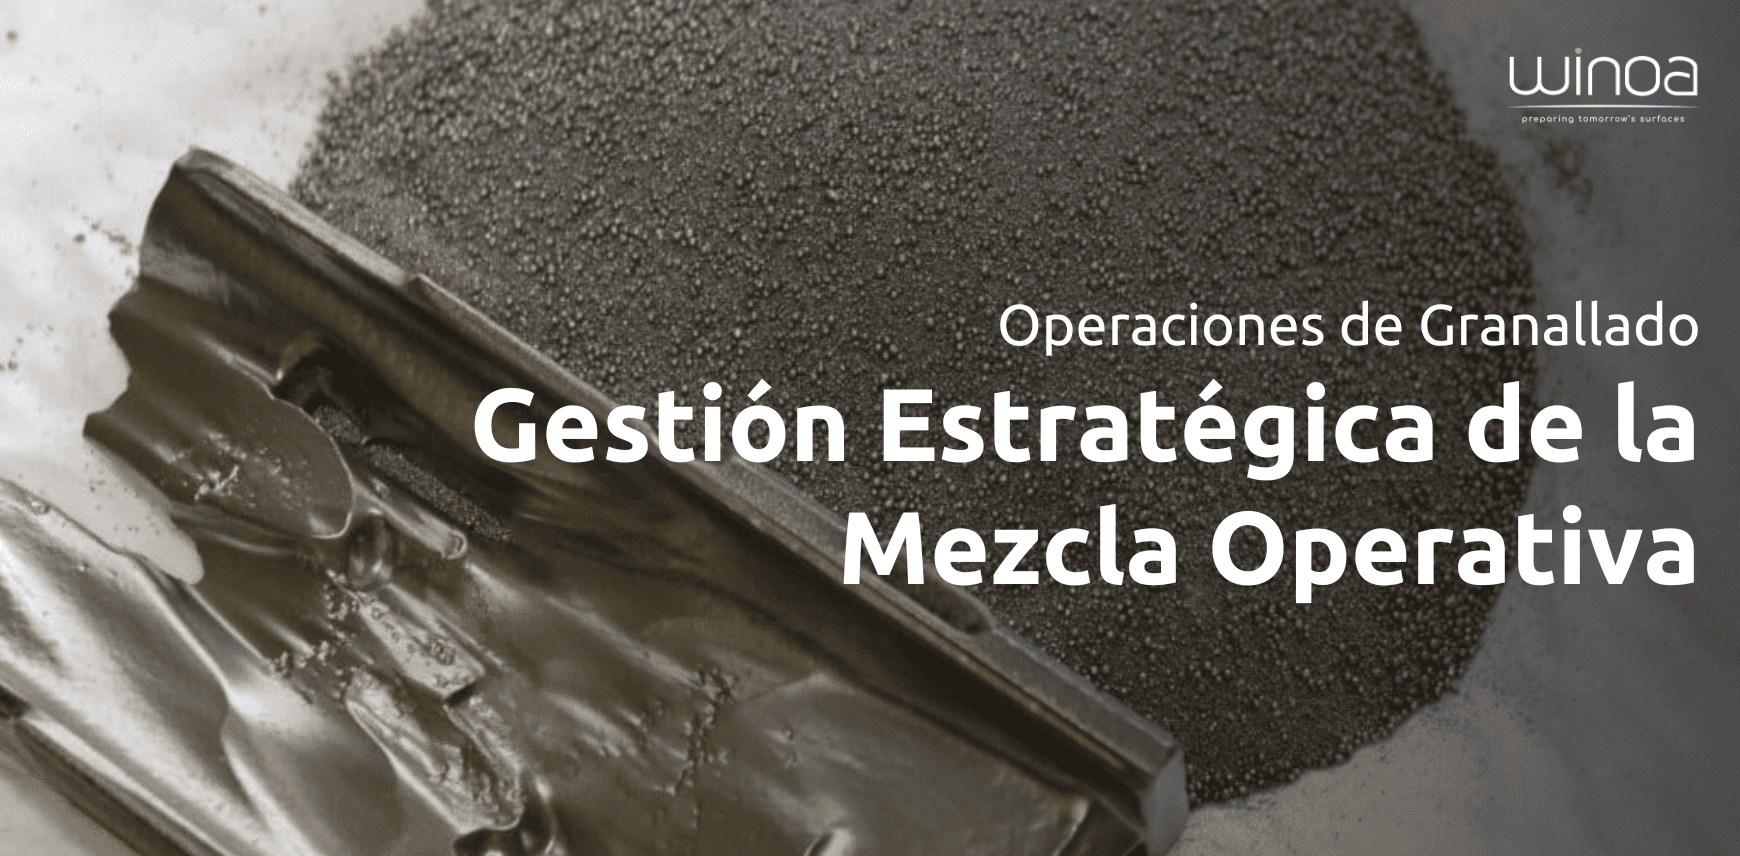 Eficientizando las Operaciones de Granallado: Gestión Estratégica de la Mezcla Operativa